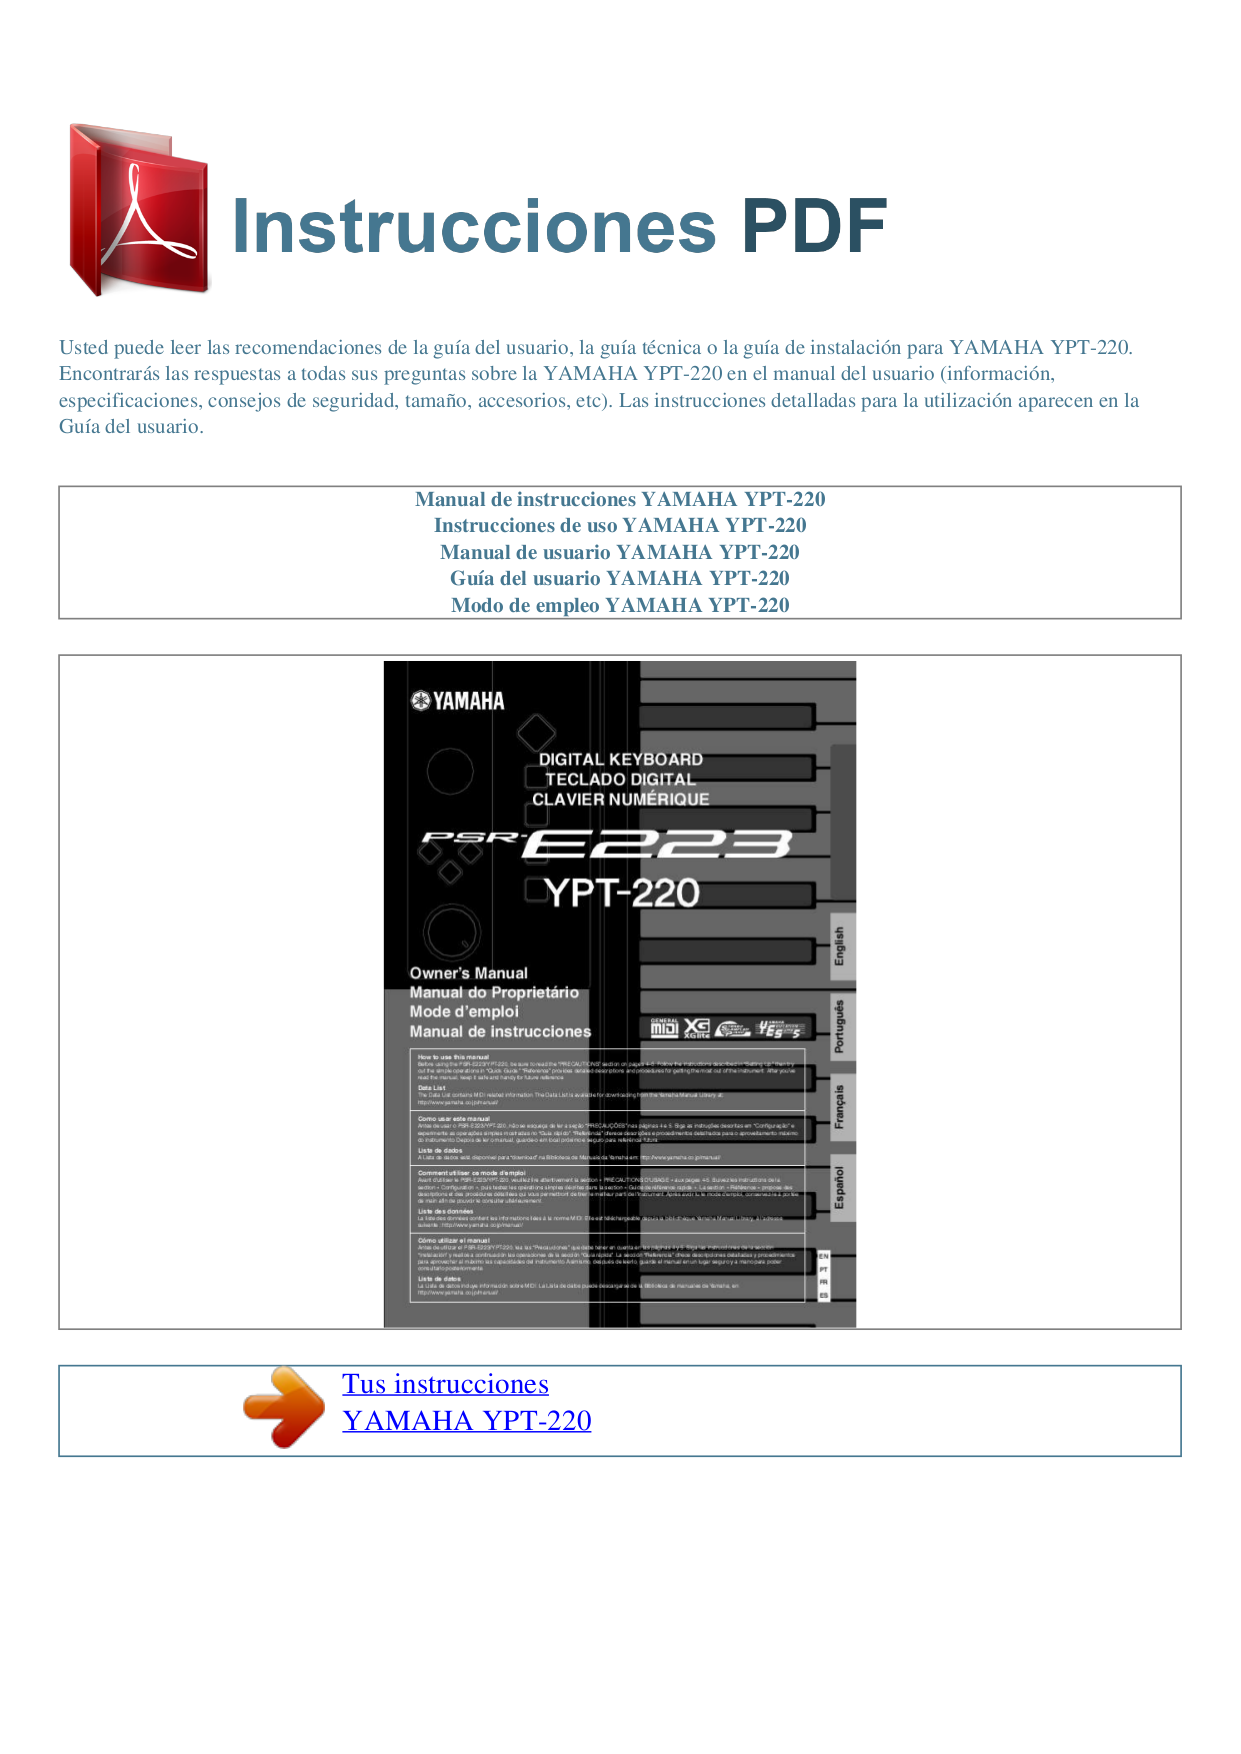 Download free pdf for Yamaha YPT-220 Music Keyboard manual